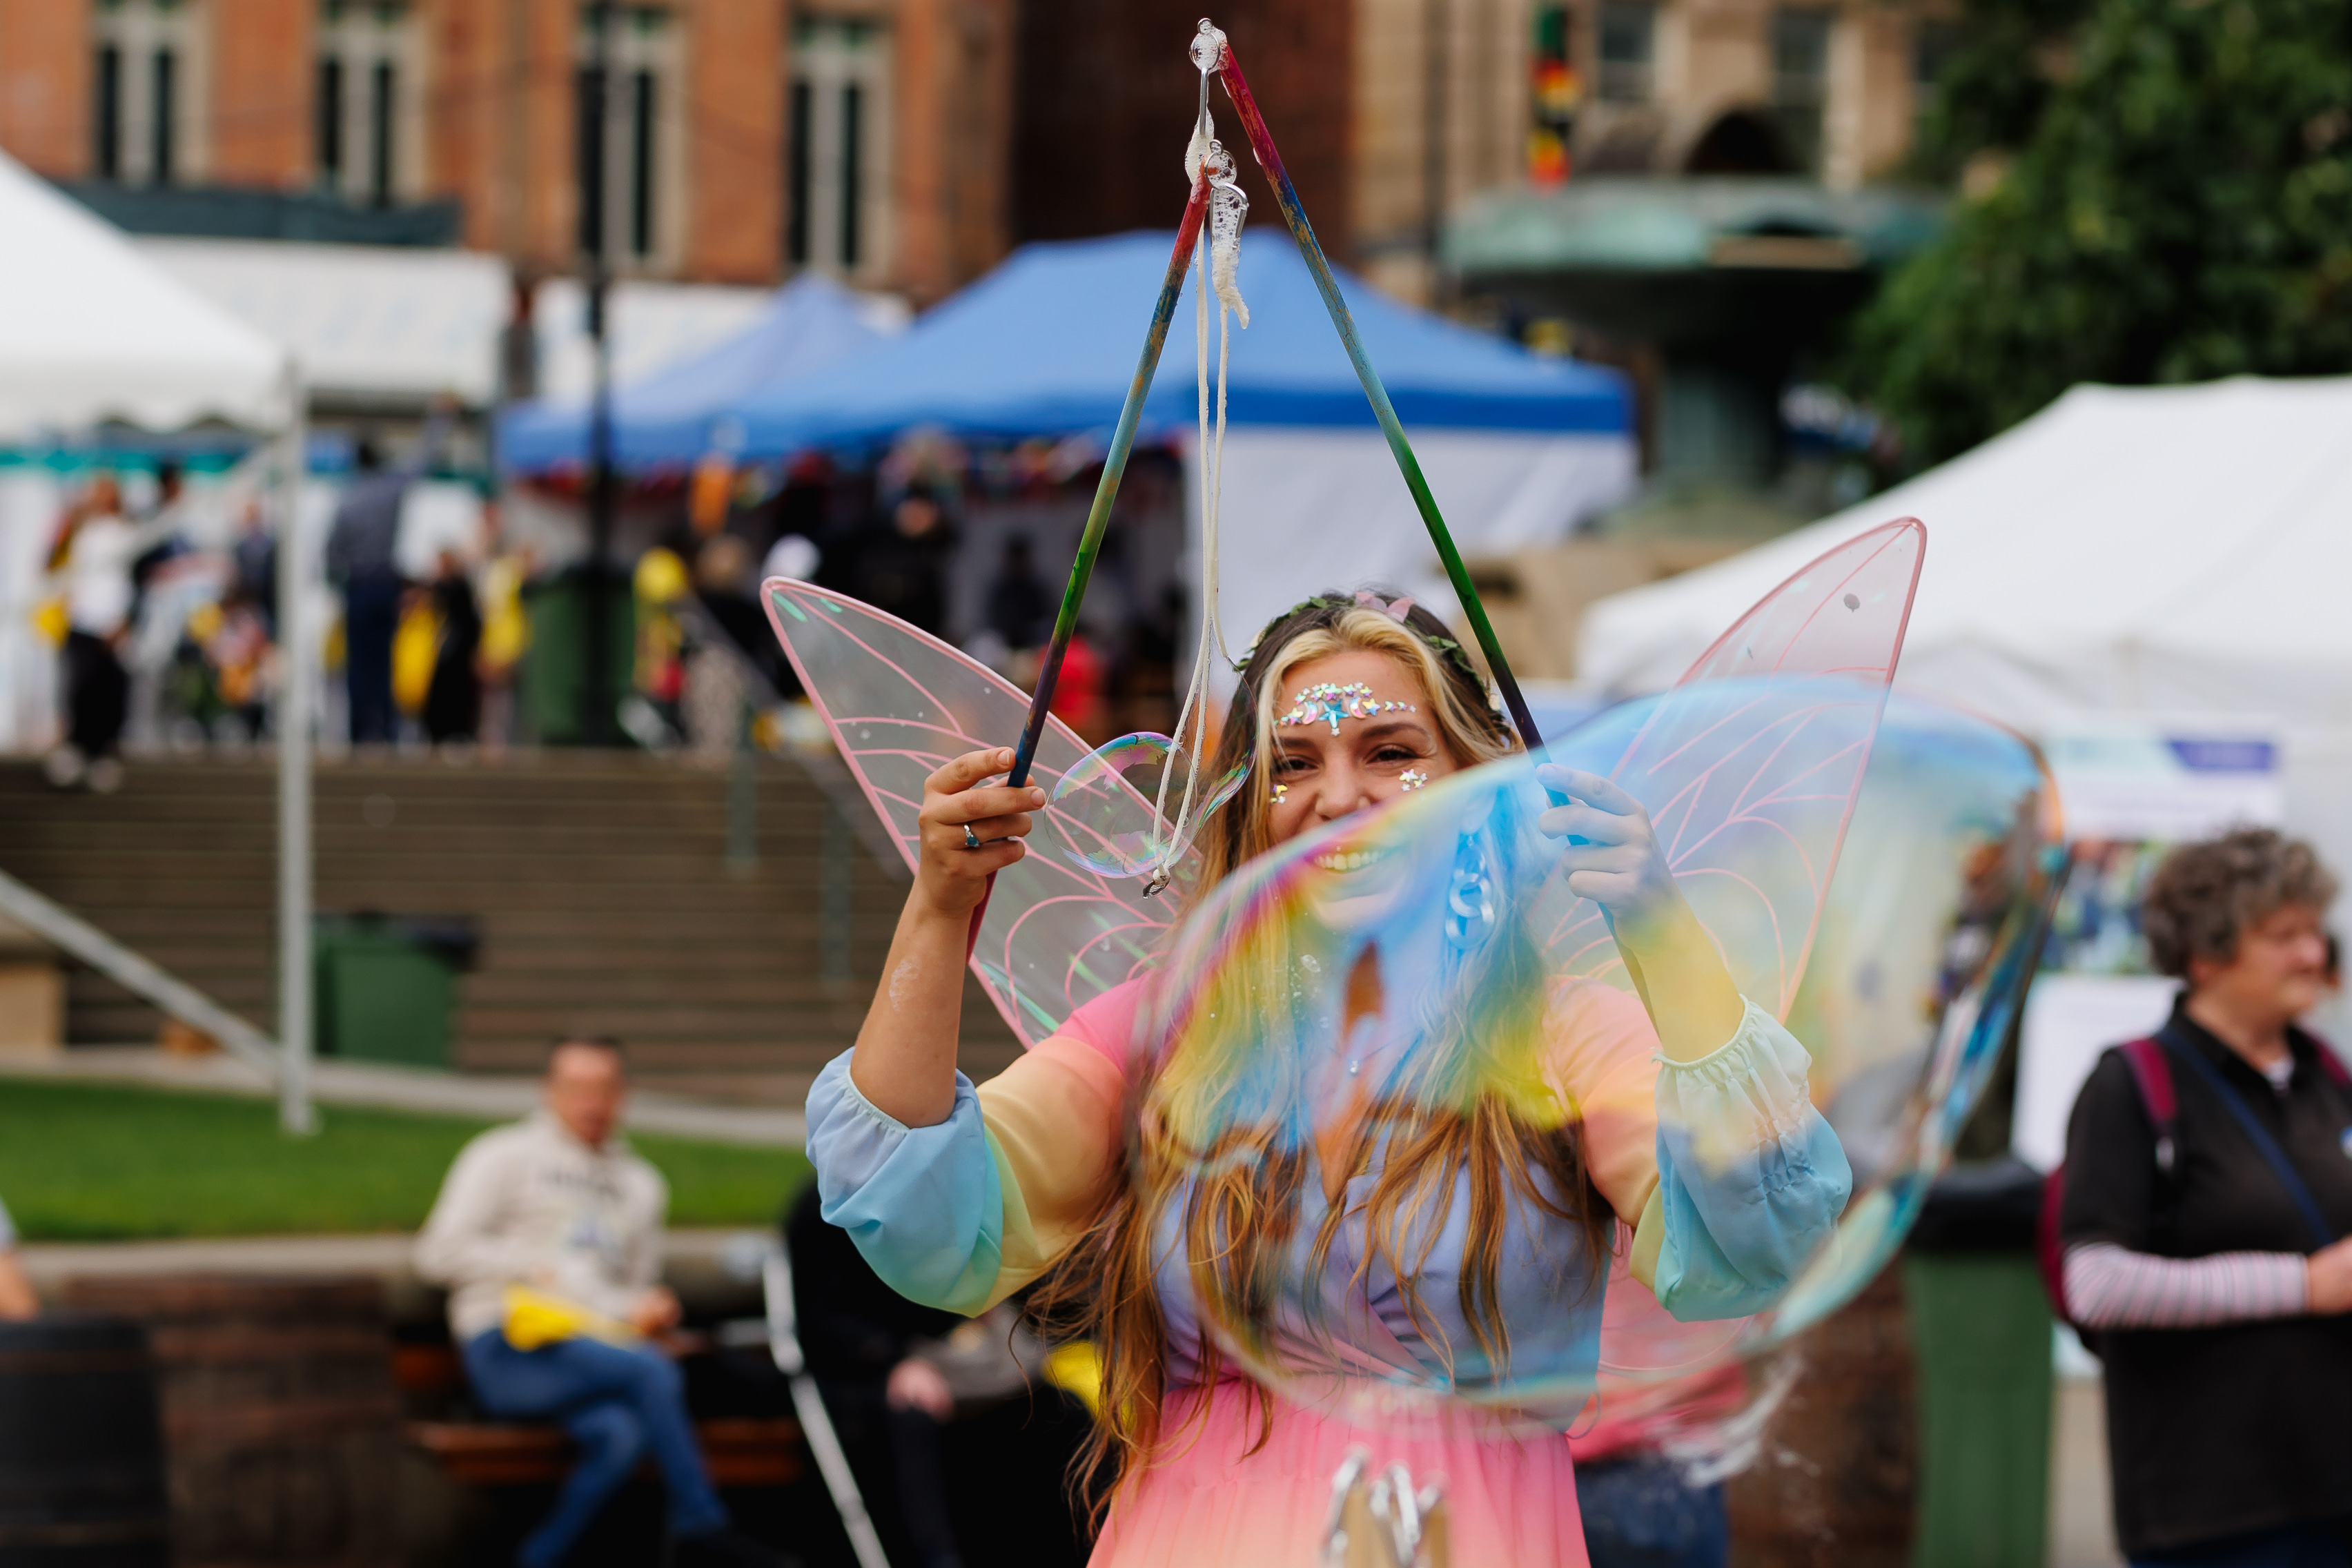 Bubbleology entertaining festival goers